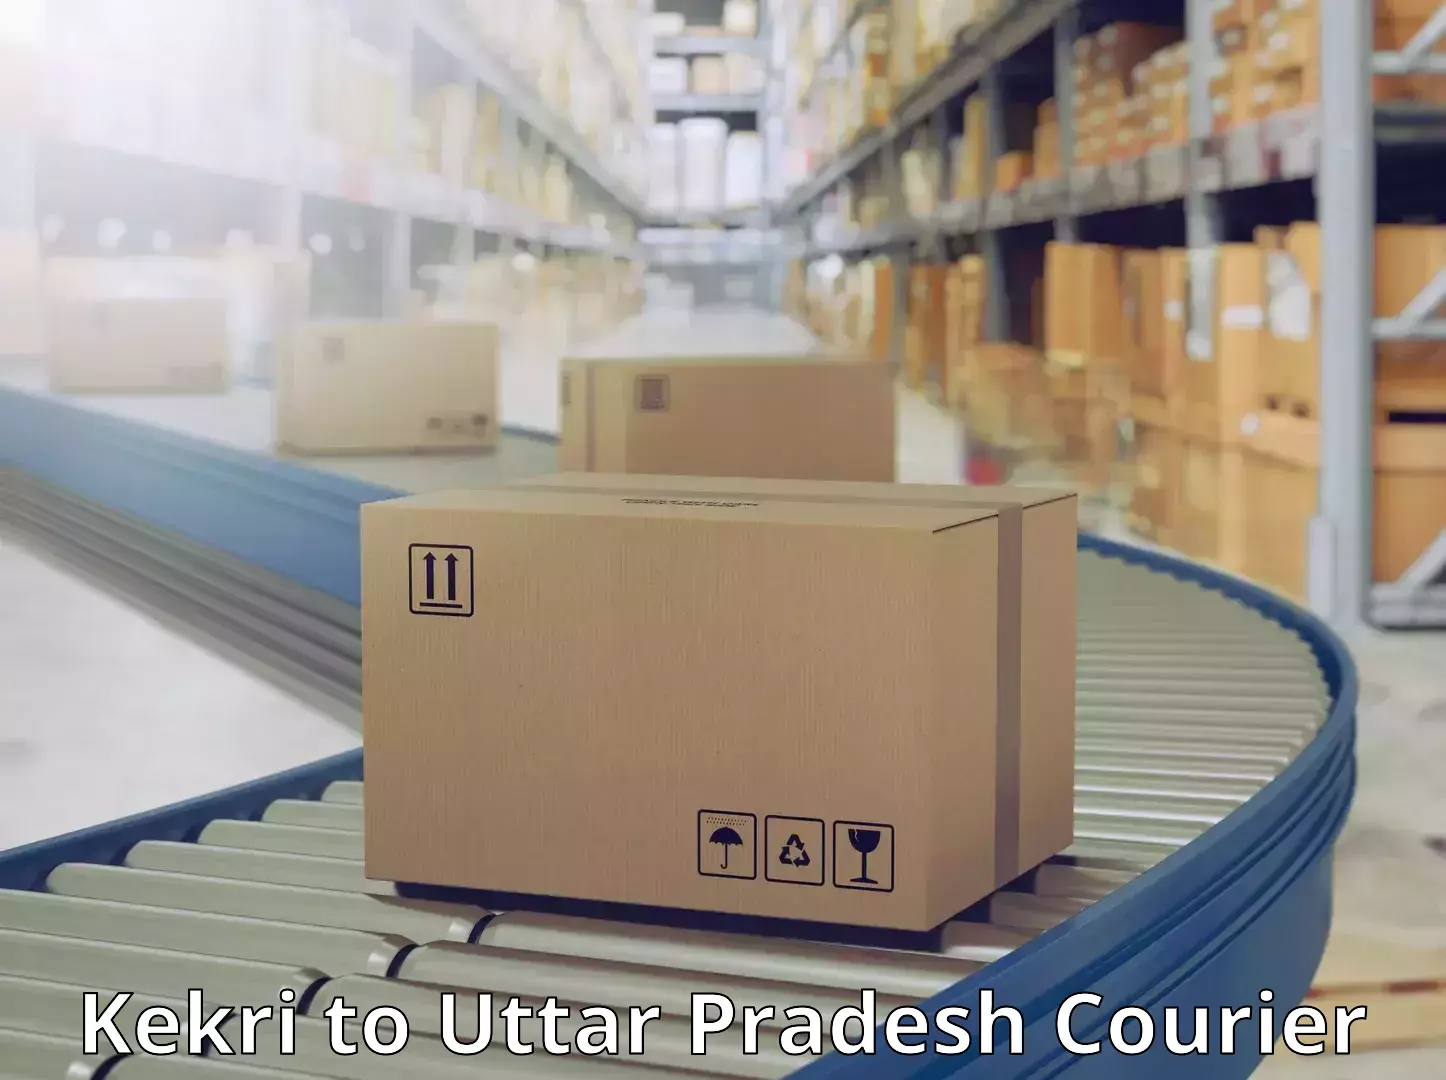 Advanced parcel tracking Kekri to Uttar Pradesh